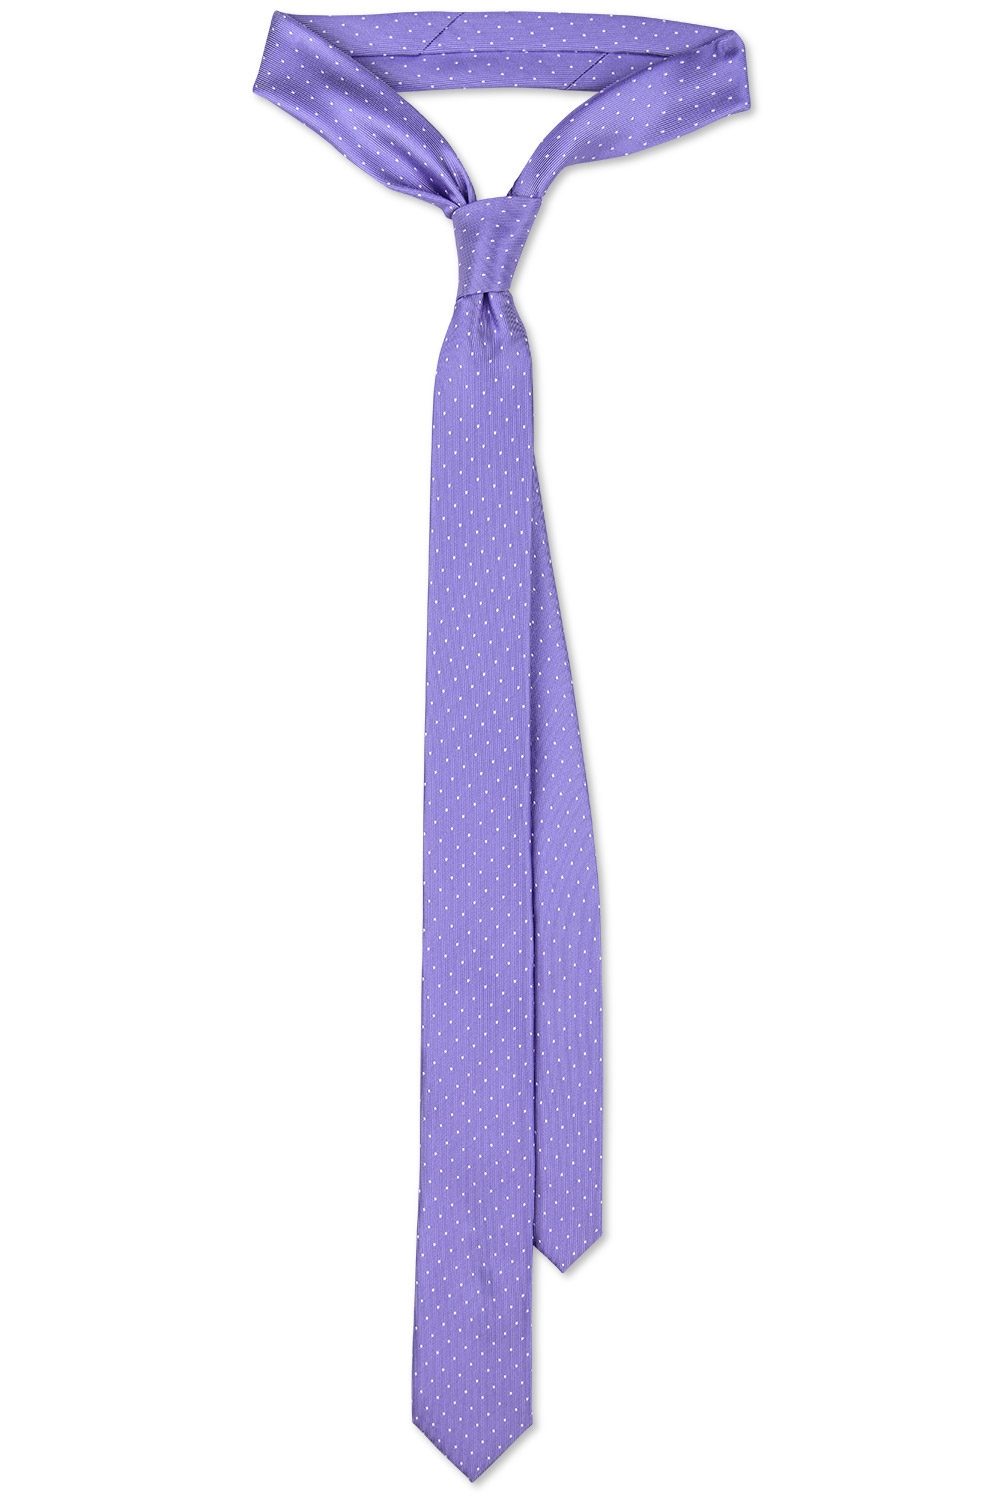 Cravata poliester mov cu puncte 0